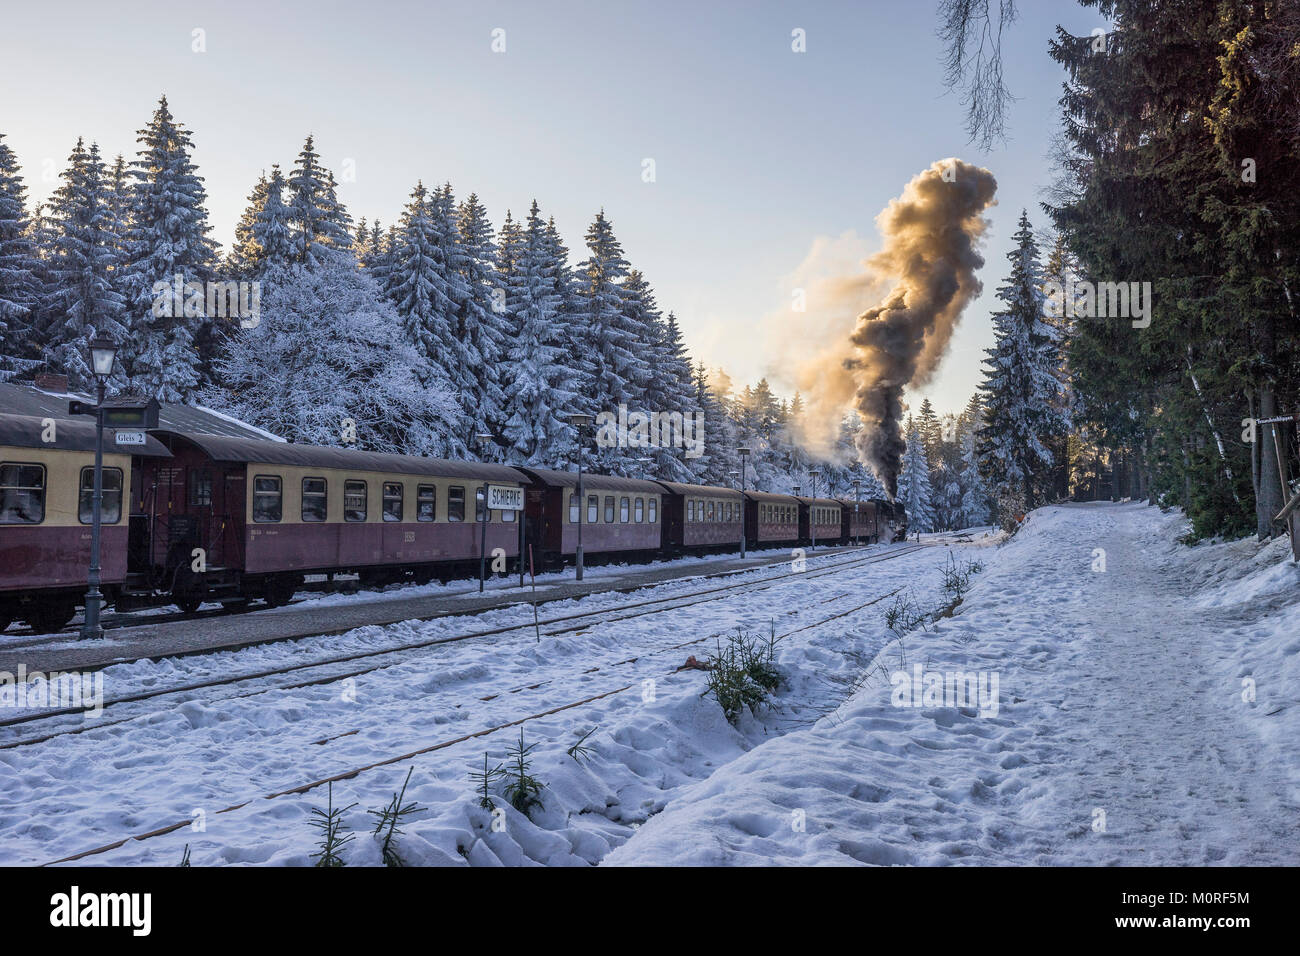 Deutschland, Sachsen-Anhalt, Schierke, Harz National Park, der Bahnhof Schierke, Brockenbahn im Winter Abend Stockfoto